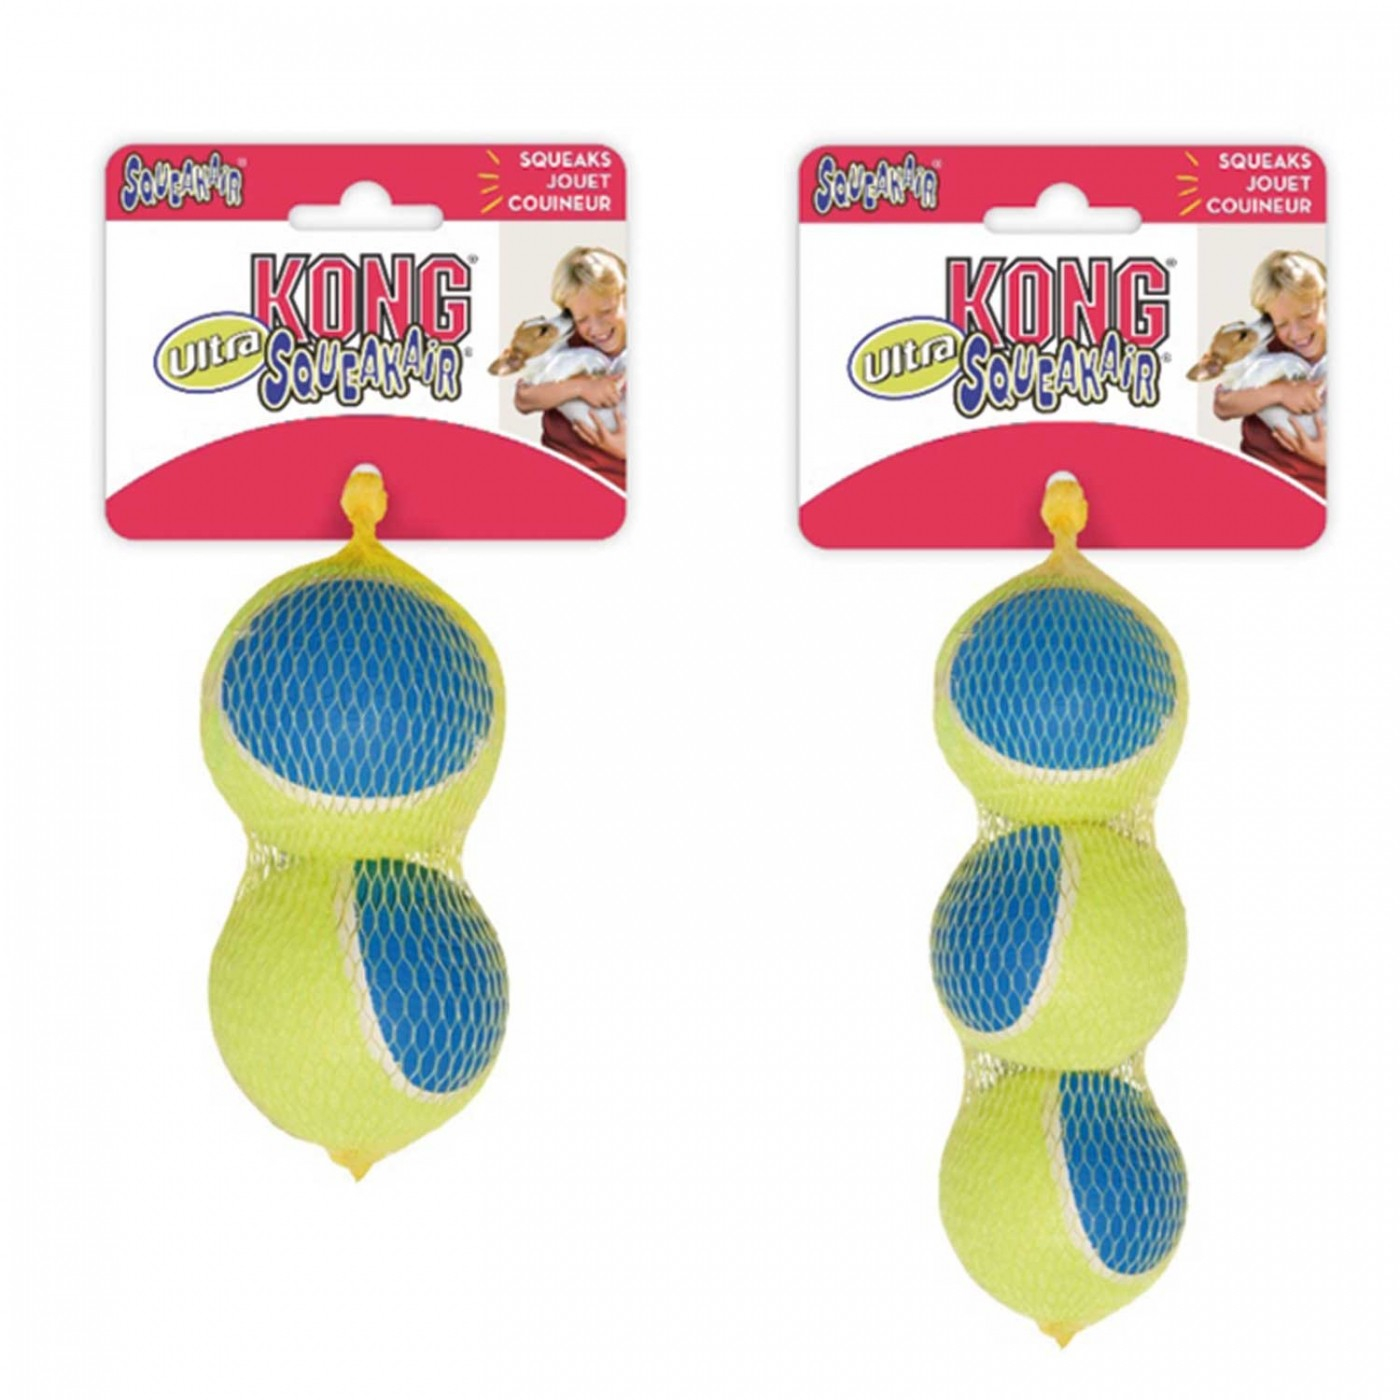 KONG Spielzeug für Hunde Ultra squeakAir Ball